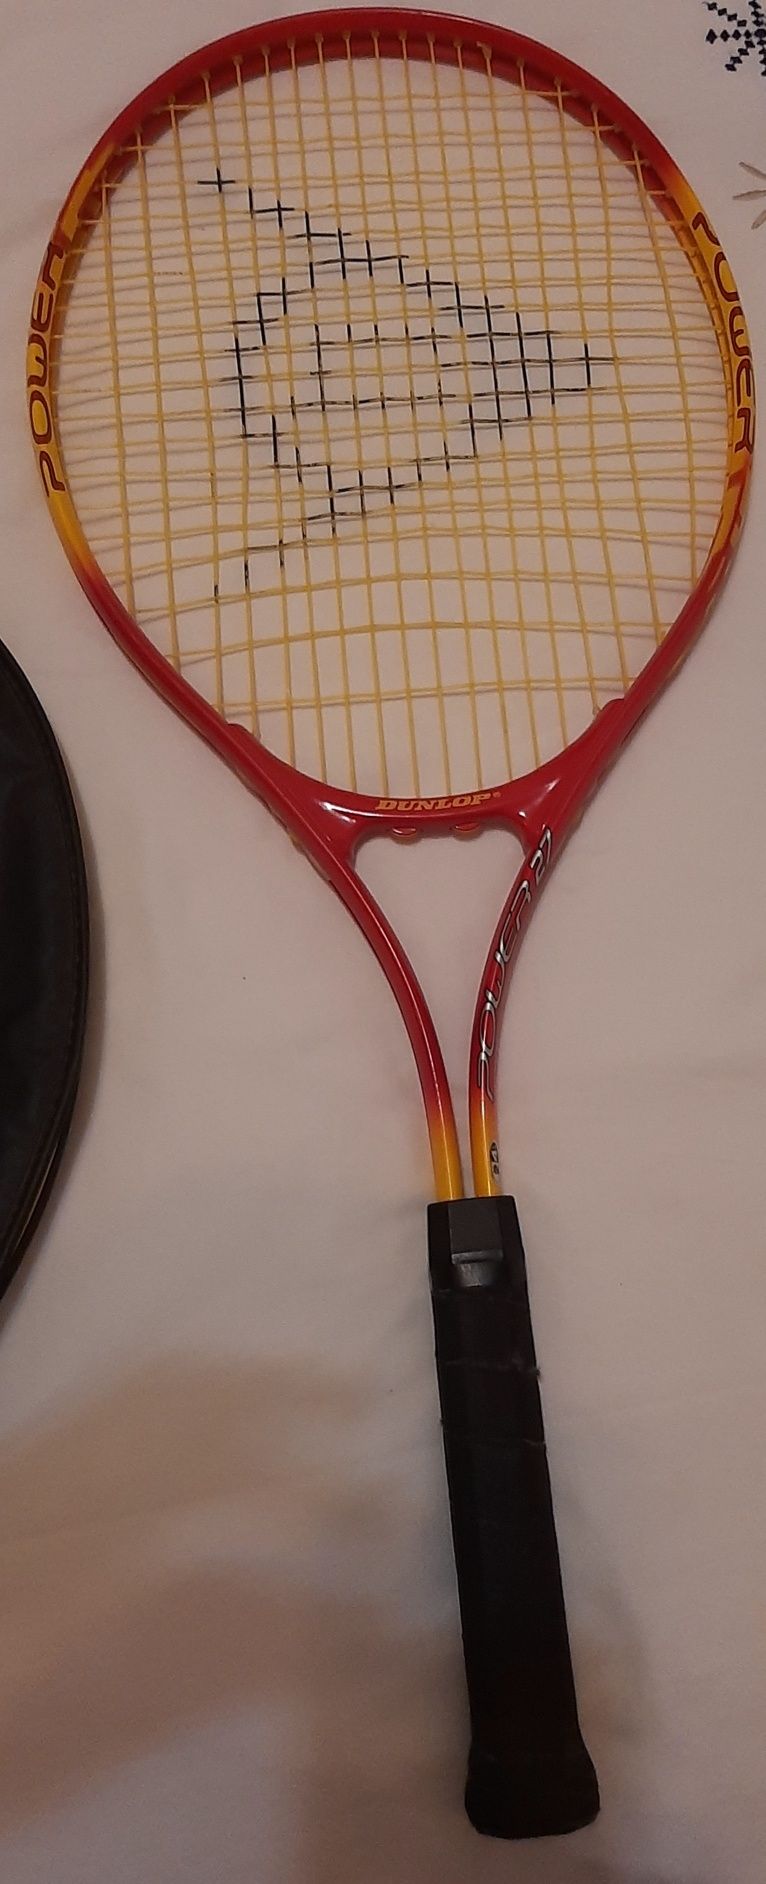 Raquete ténis Dunlop power 27 laranja